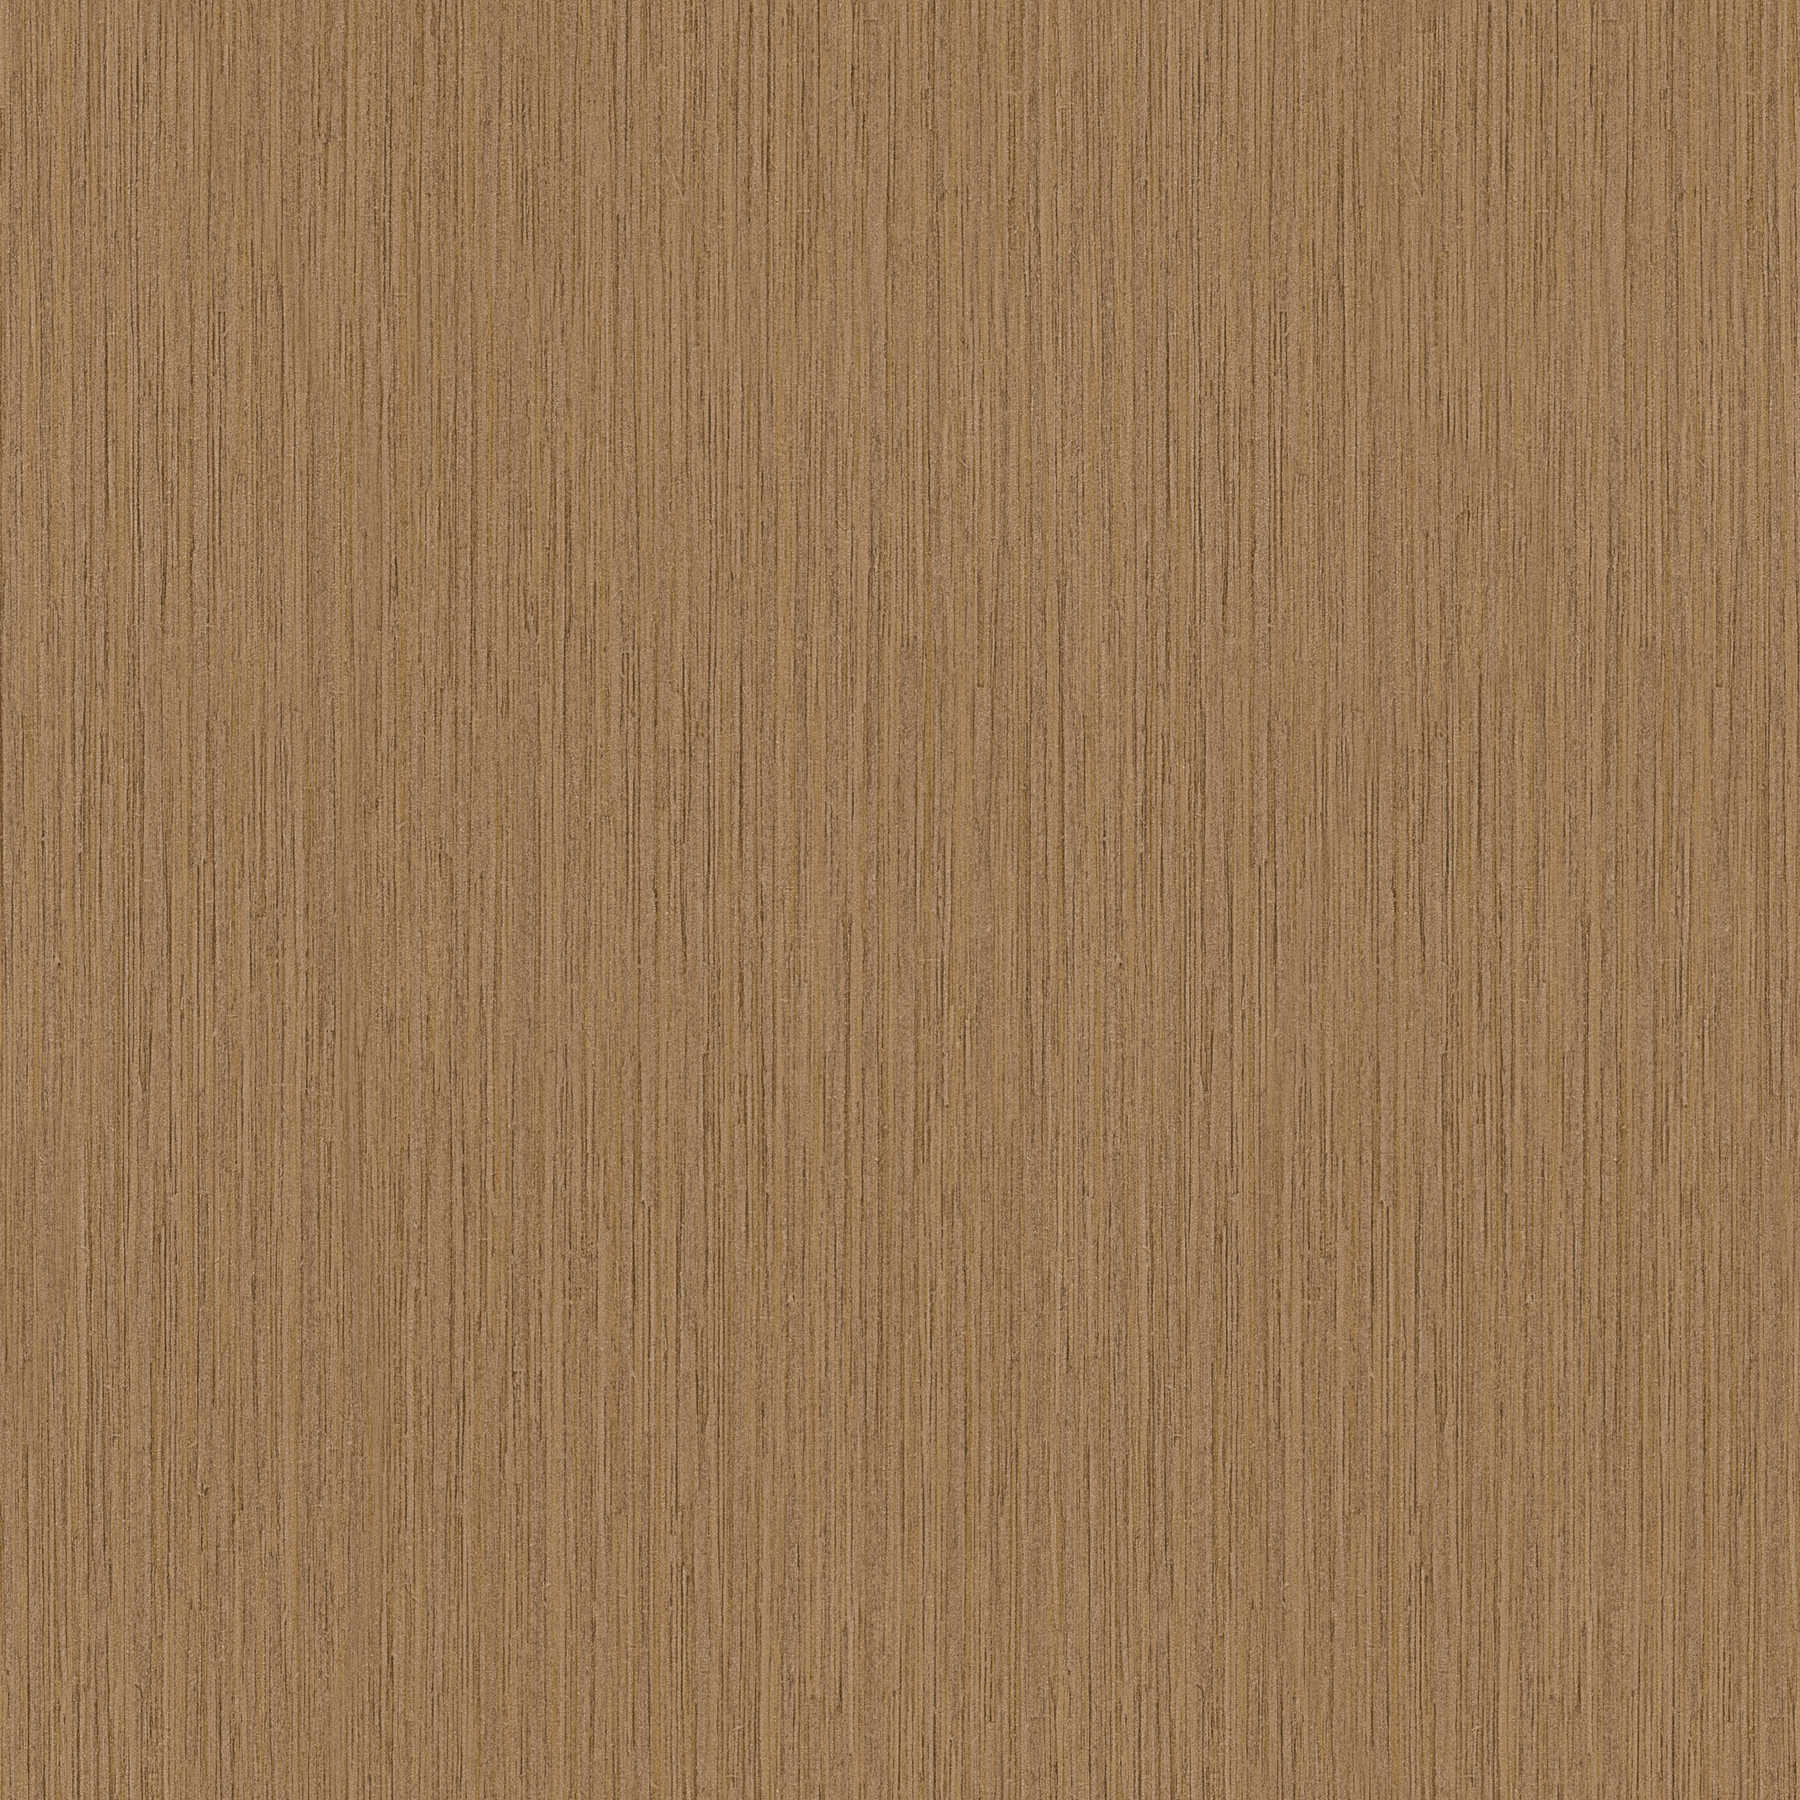 Papier peint naturel imitation bois bambou foncé - marron
